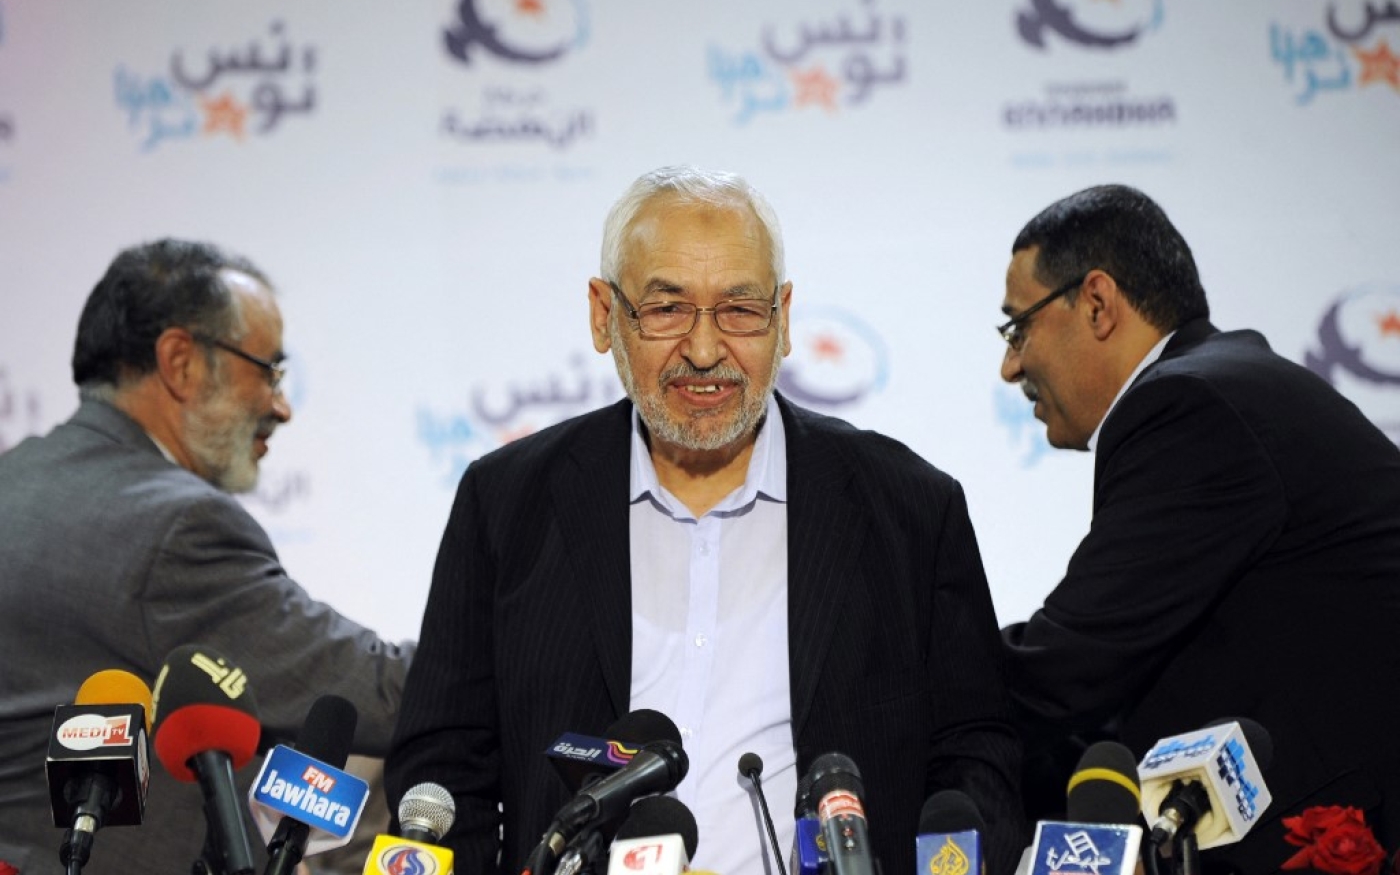 Le fondateur du parti islamiste tunisien Ennahdha, Rached Ghannouchi, prend la parole lors d’une conférence de presse à Tunis, le 28 octobre 2011. Son mouvement a remporté 89 des 217 sièges lors des élections constituantes de cette année-là (AFP/Fethi Belaid)